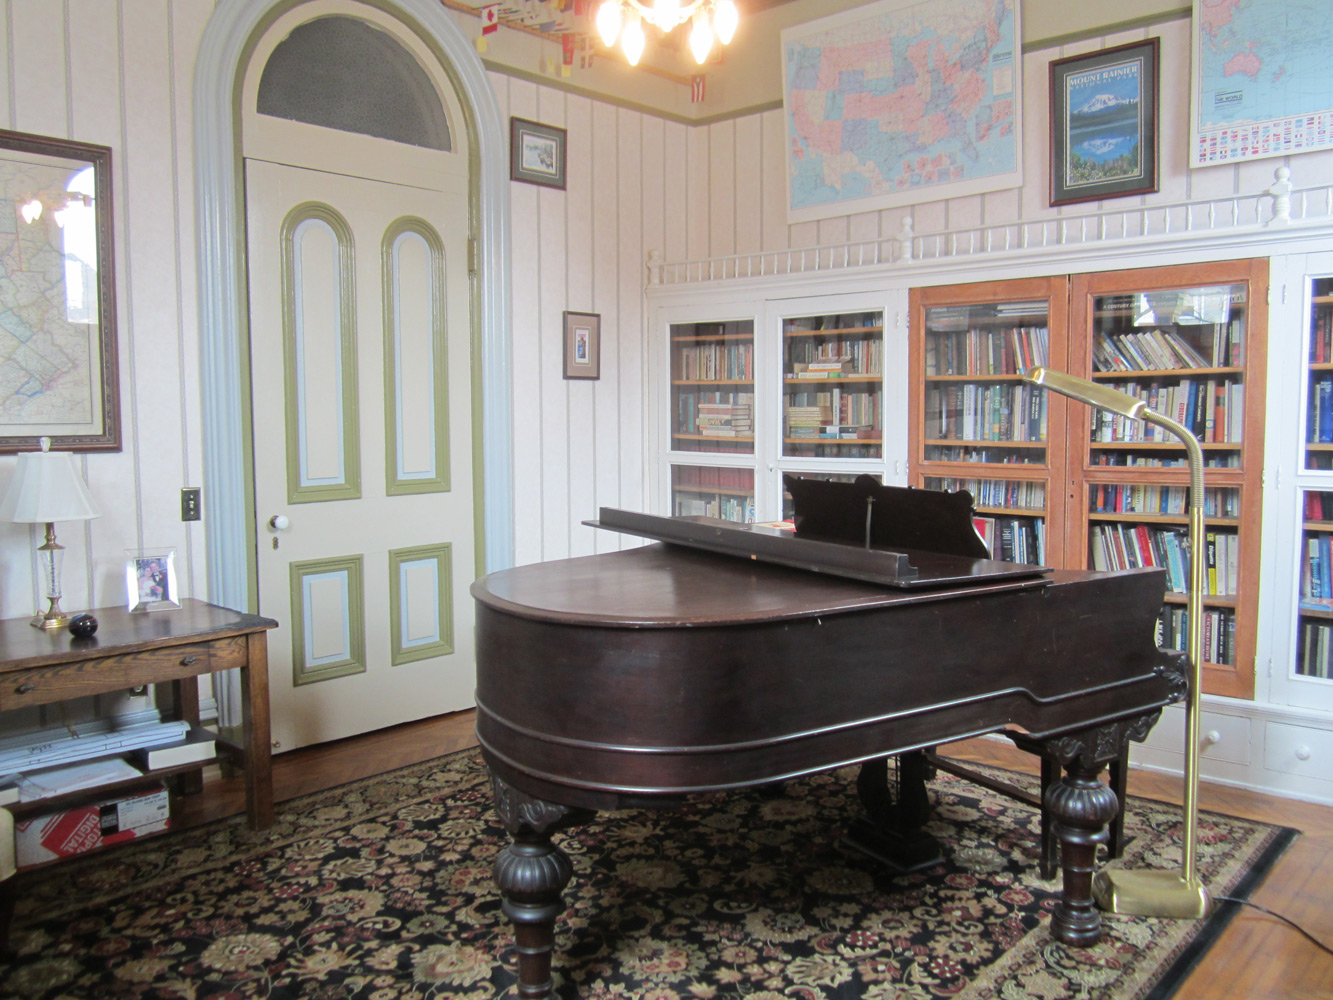 Piano and bookshelves